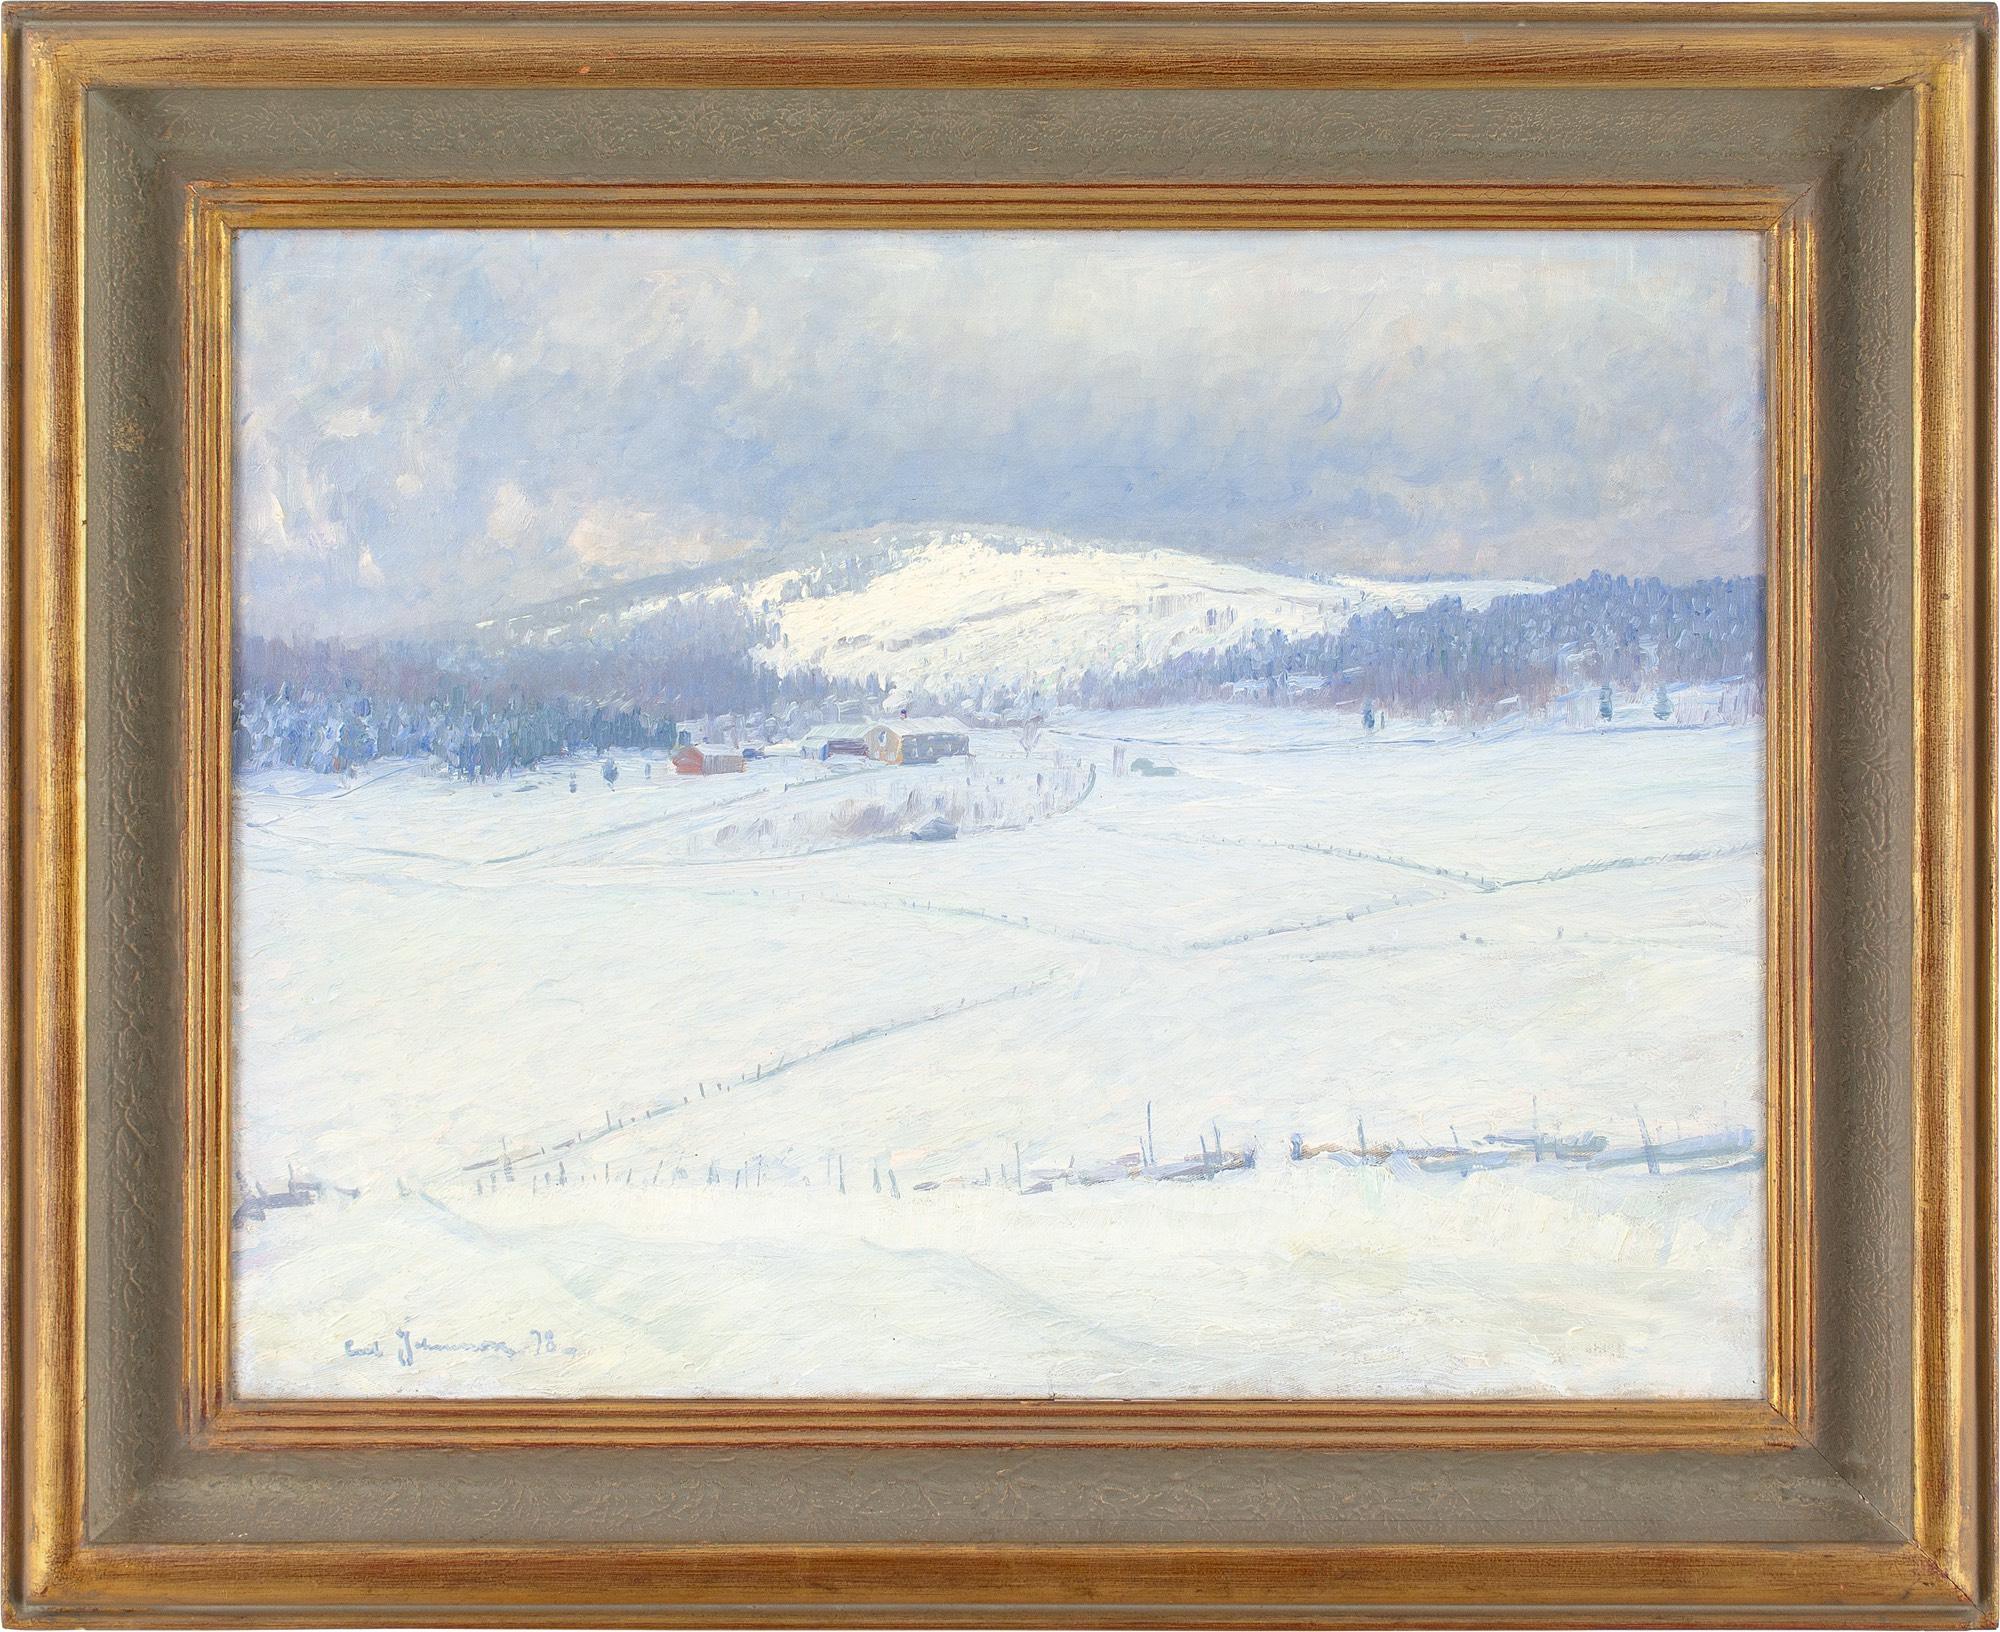 Carl Johansson  Landscape Painting - Carl Johansson, Snowy Landscape With Buildings, Antique Oil Painting